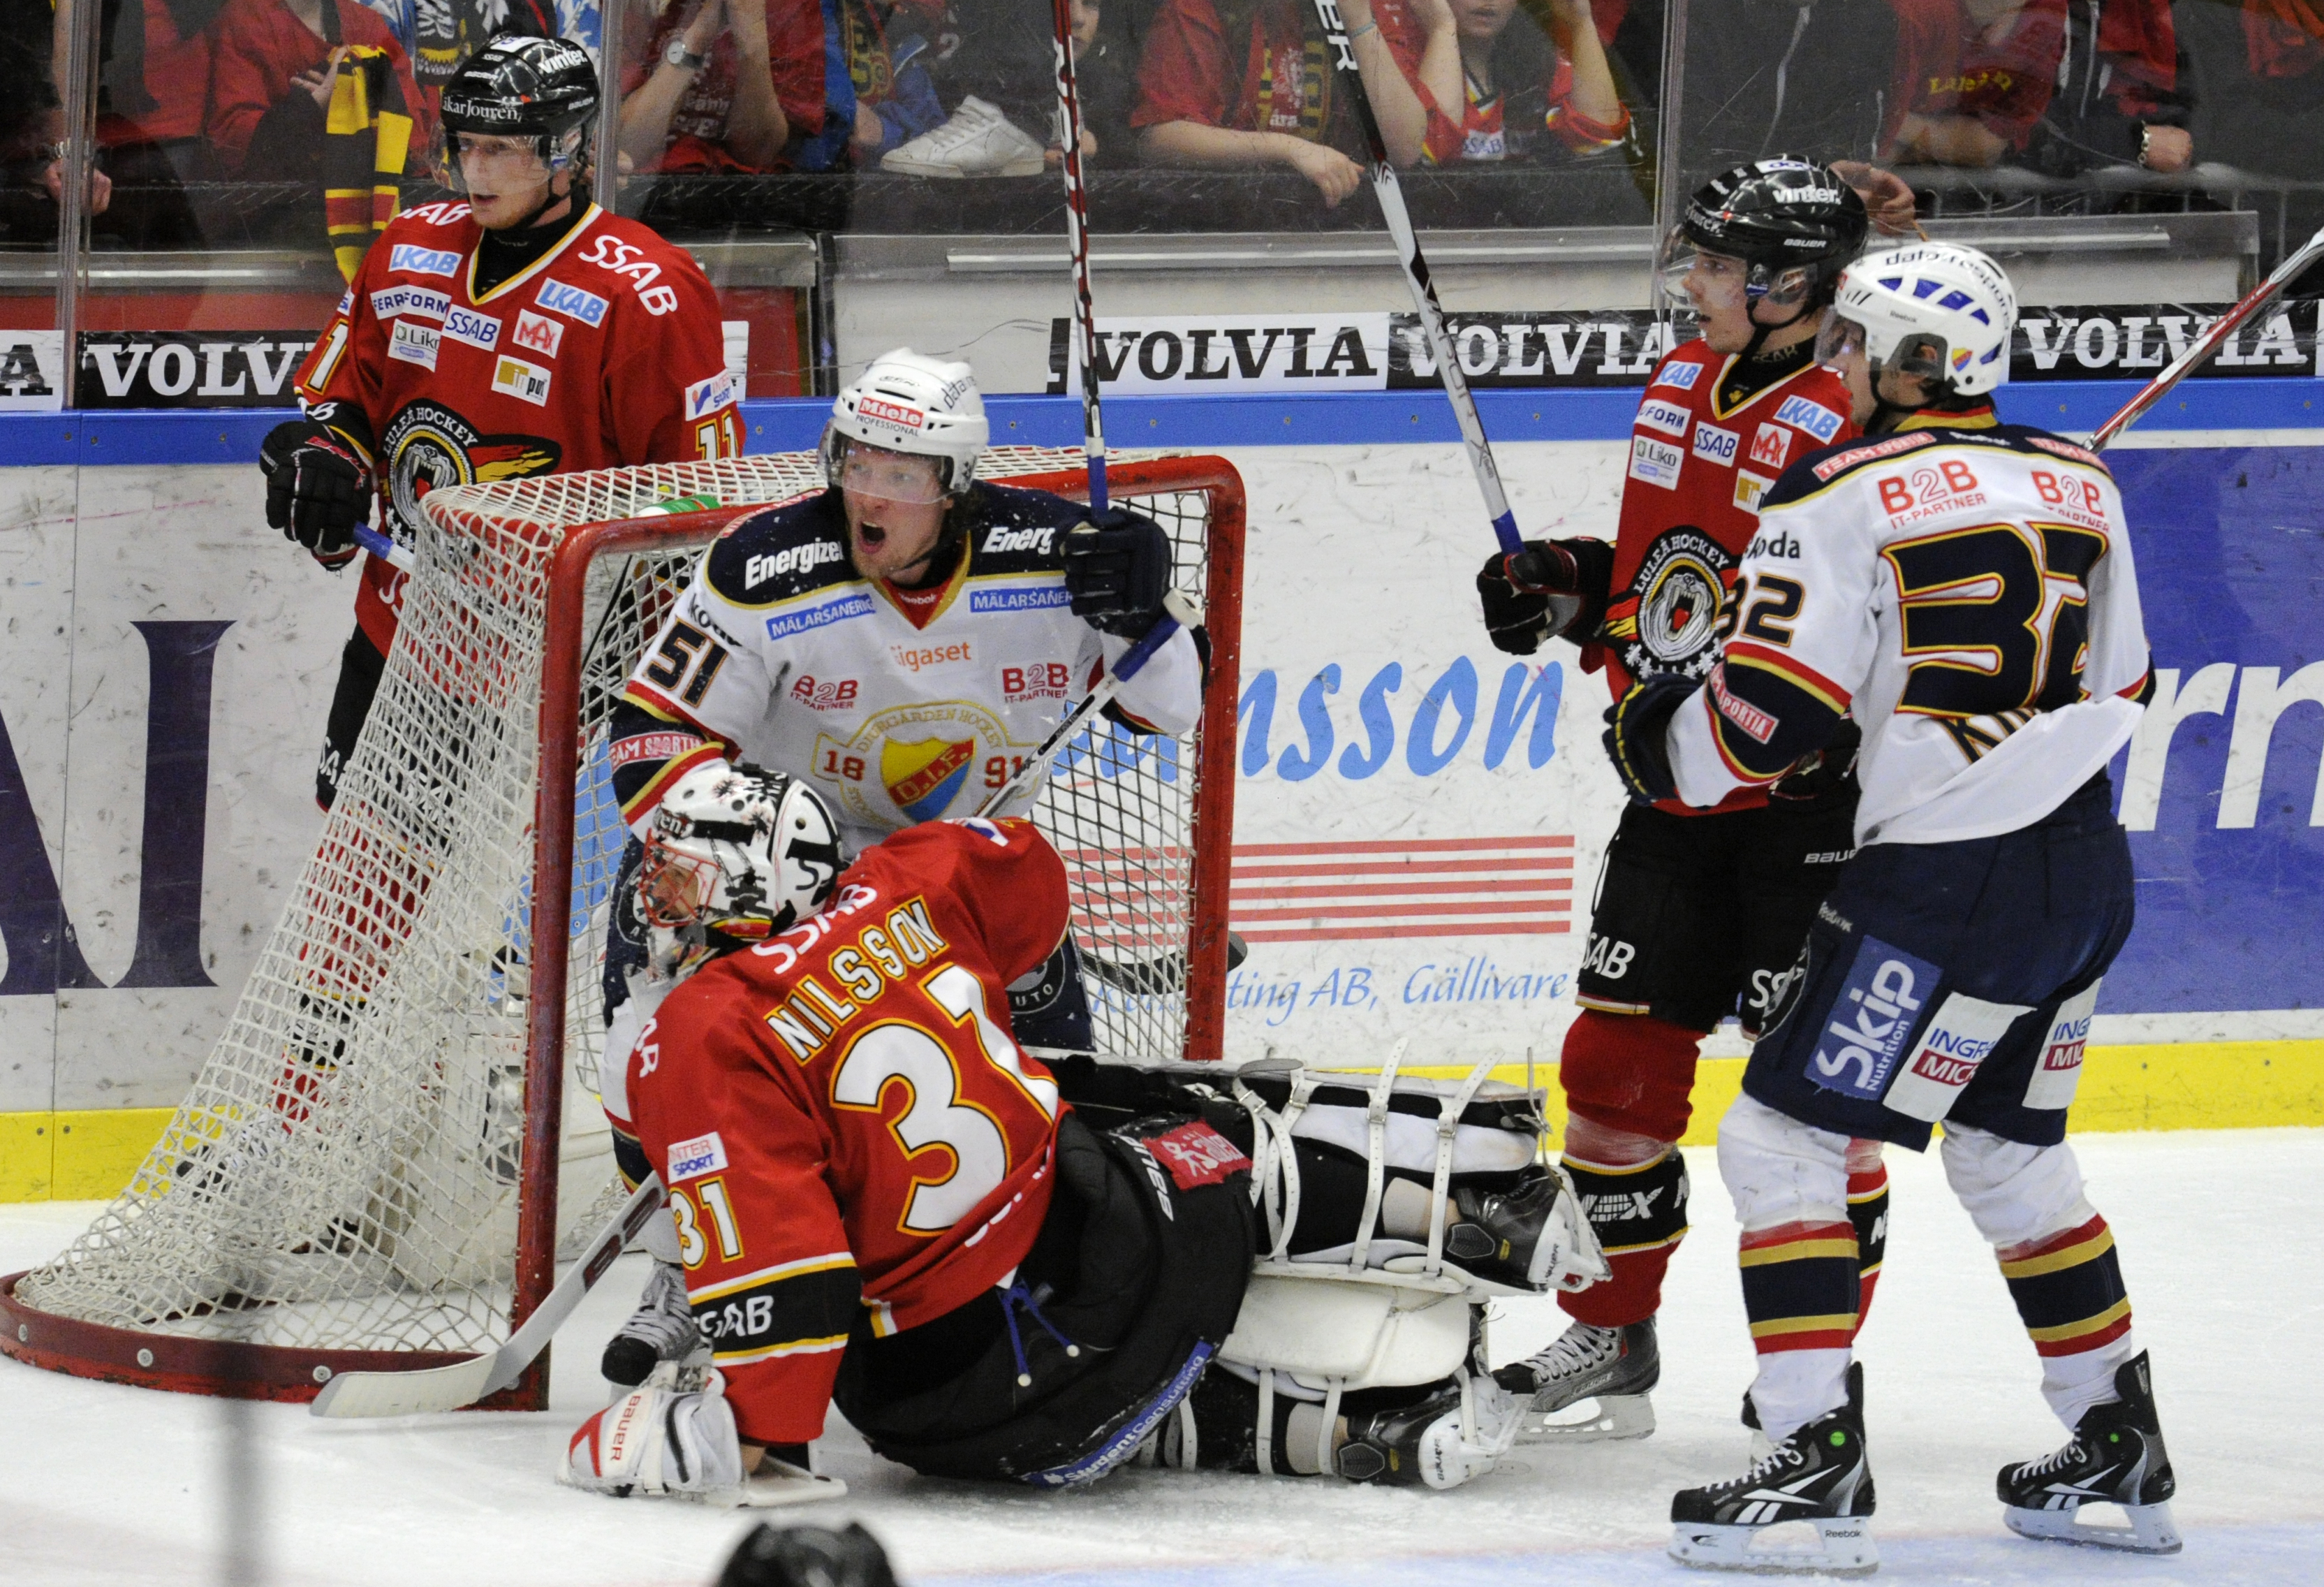 Luleå spelade stundtals makalöst bra under grundserien. Kan de gå hela vägen månne?